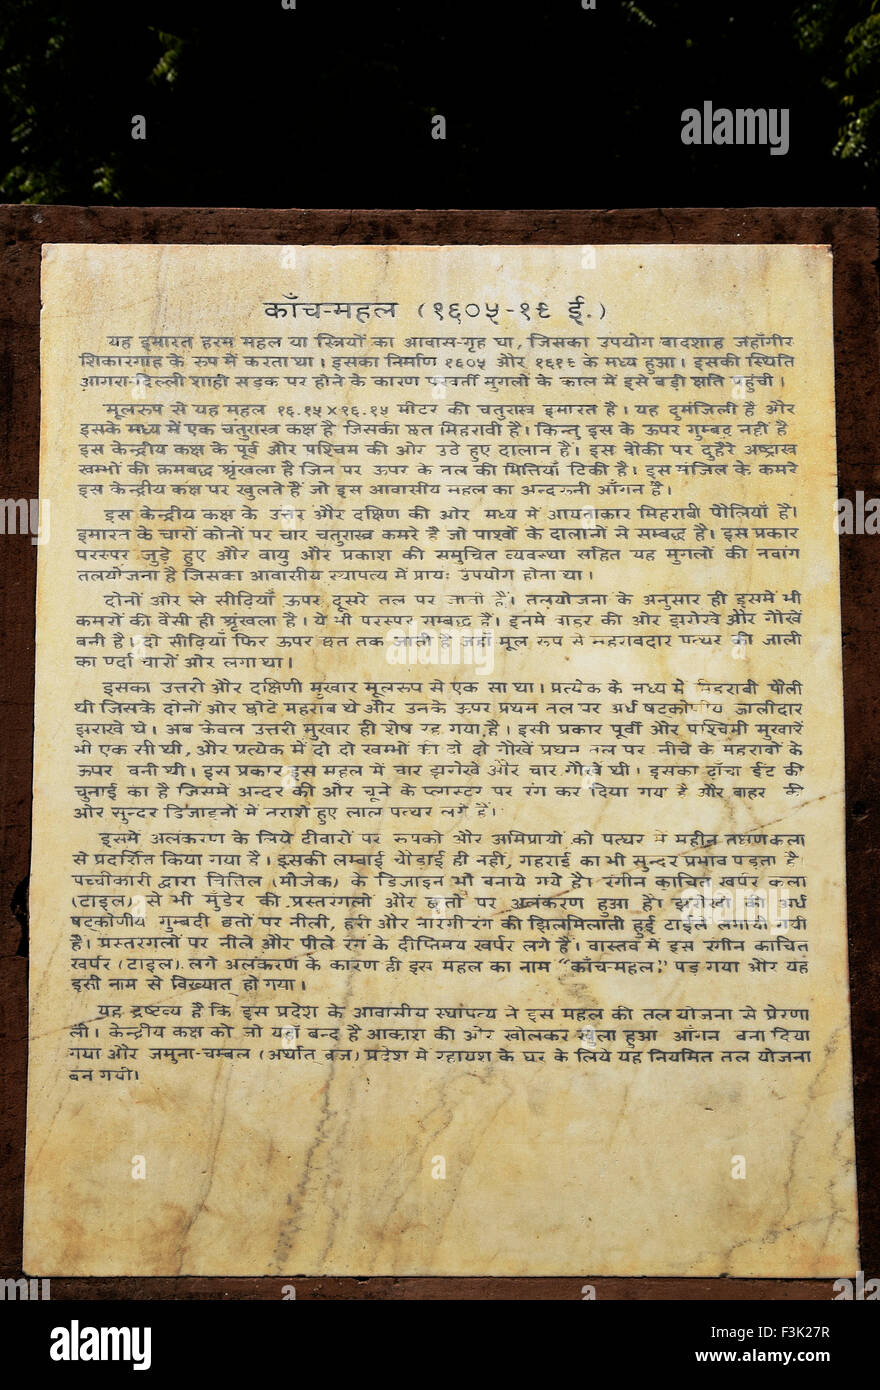 La spiegazione dettaglio monumento information board in Hindi testo bianco su marmo bianco all'ingresso del Kanch Mahal Agra fino Foto Stock